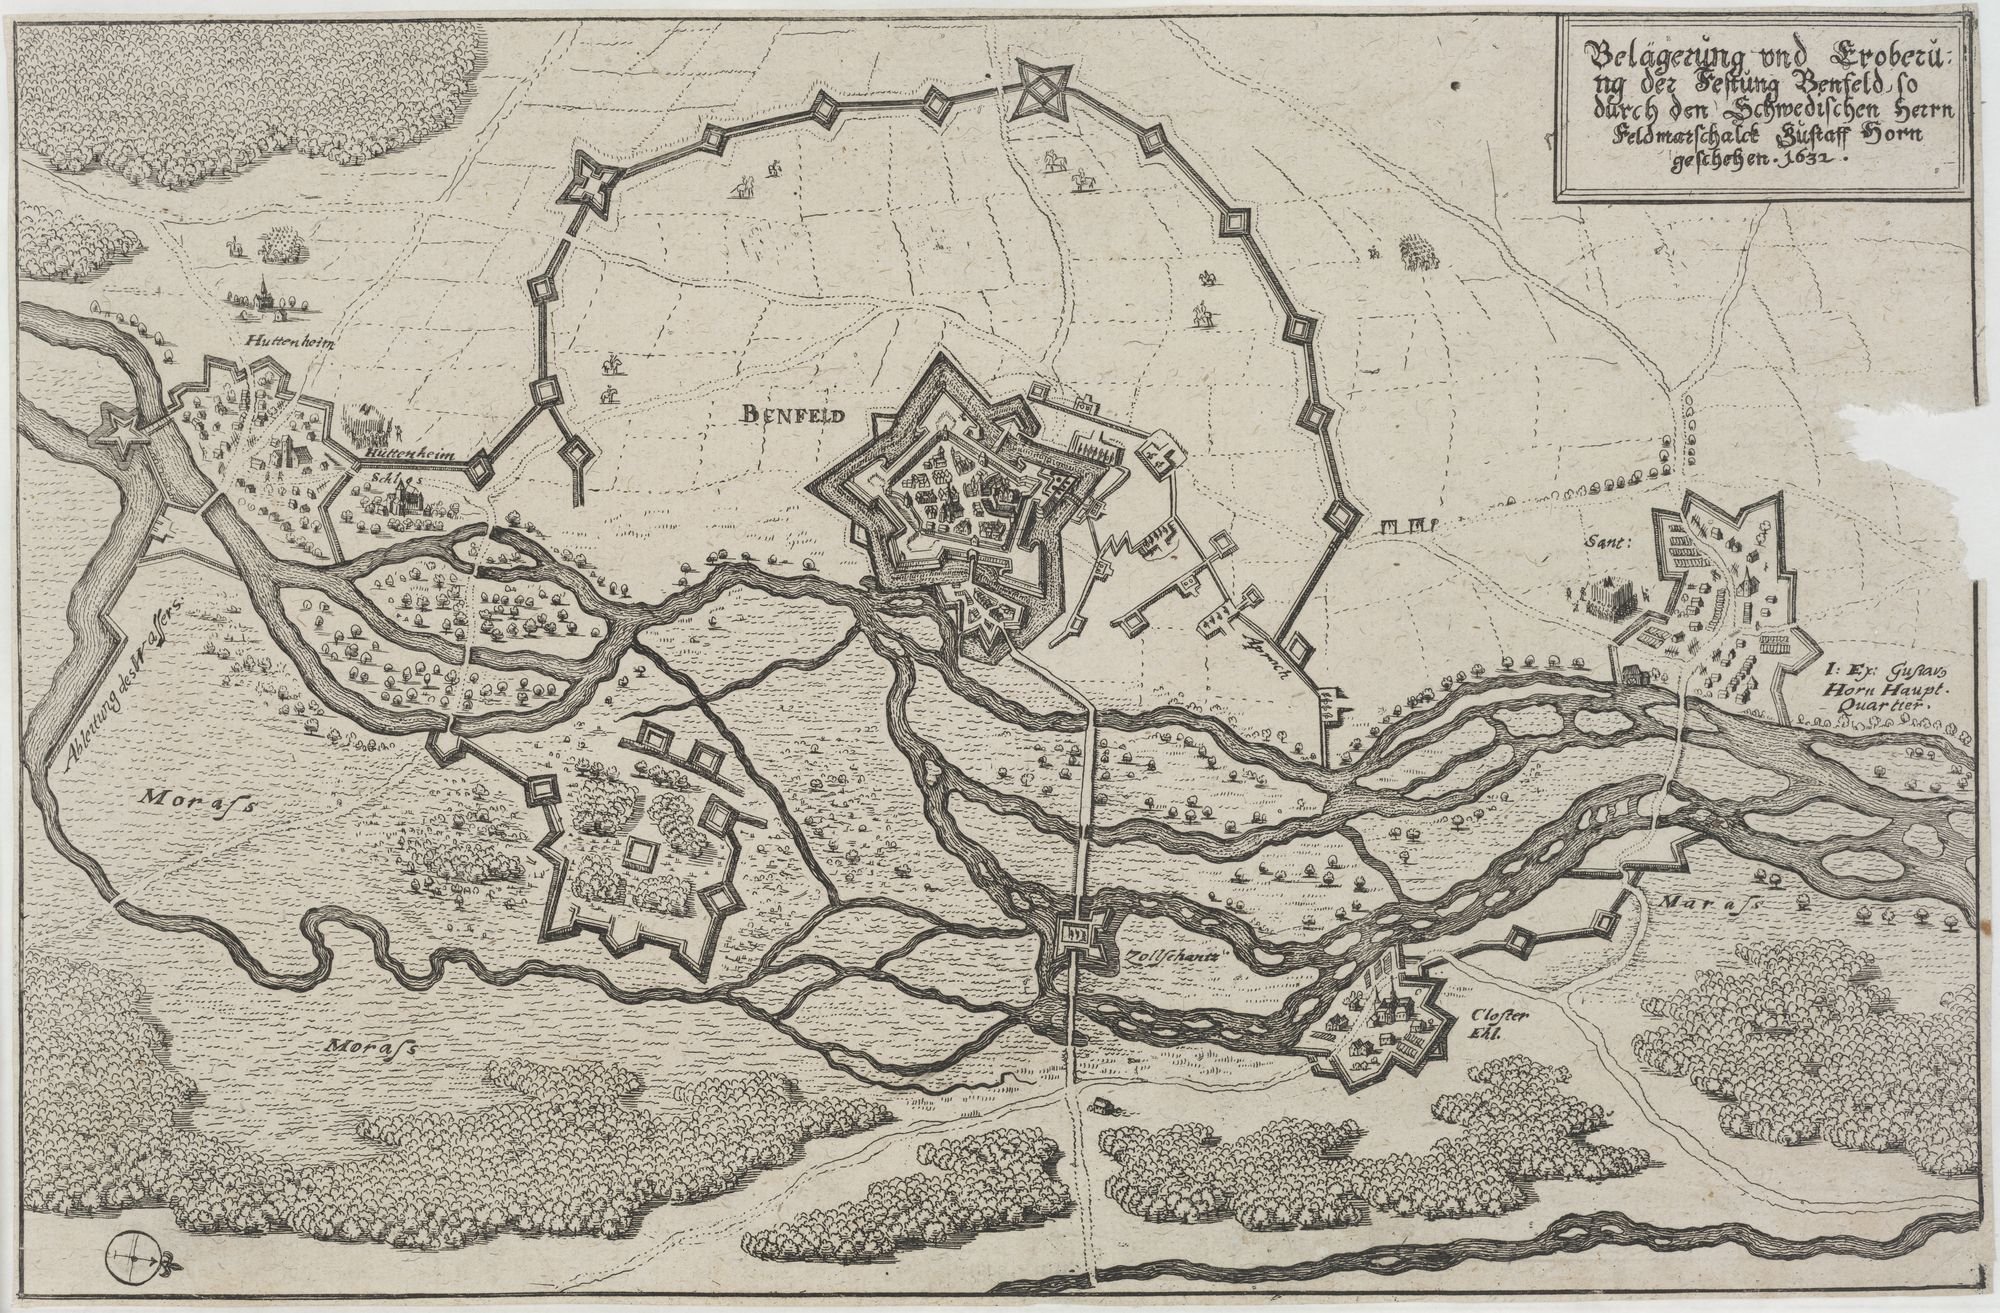 Belägerung und Eroberu=/ ng der Festung Benfeld, so/ durch den Schwedischen Herrn/ Feldmarschalck Gustaff Horn/ geschehen 1632. (Kulturstiftung Sachsen-Anhalt Public Domain Mark)